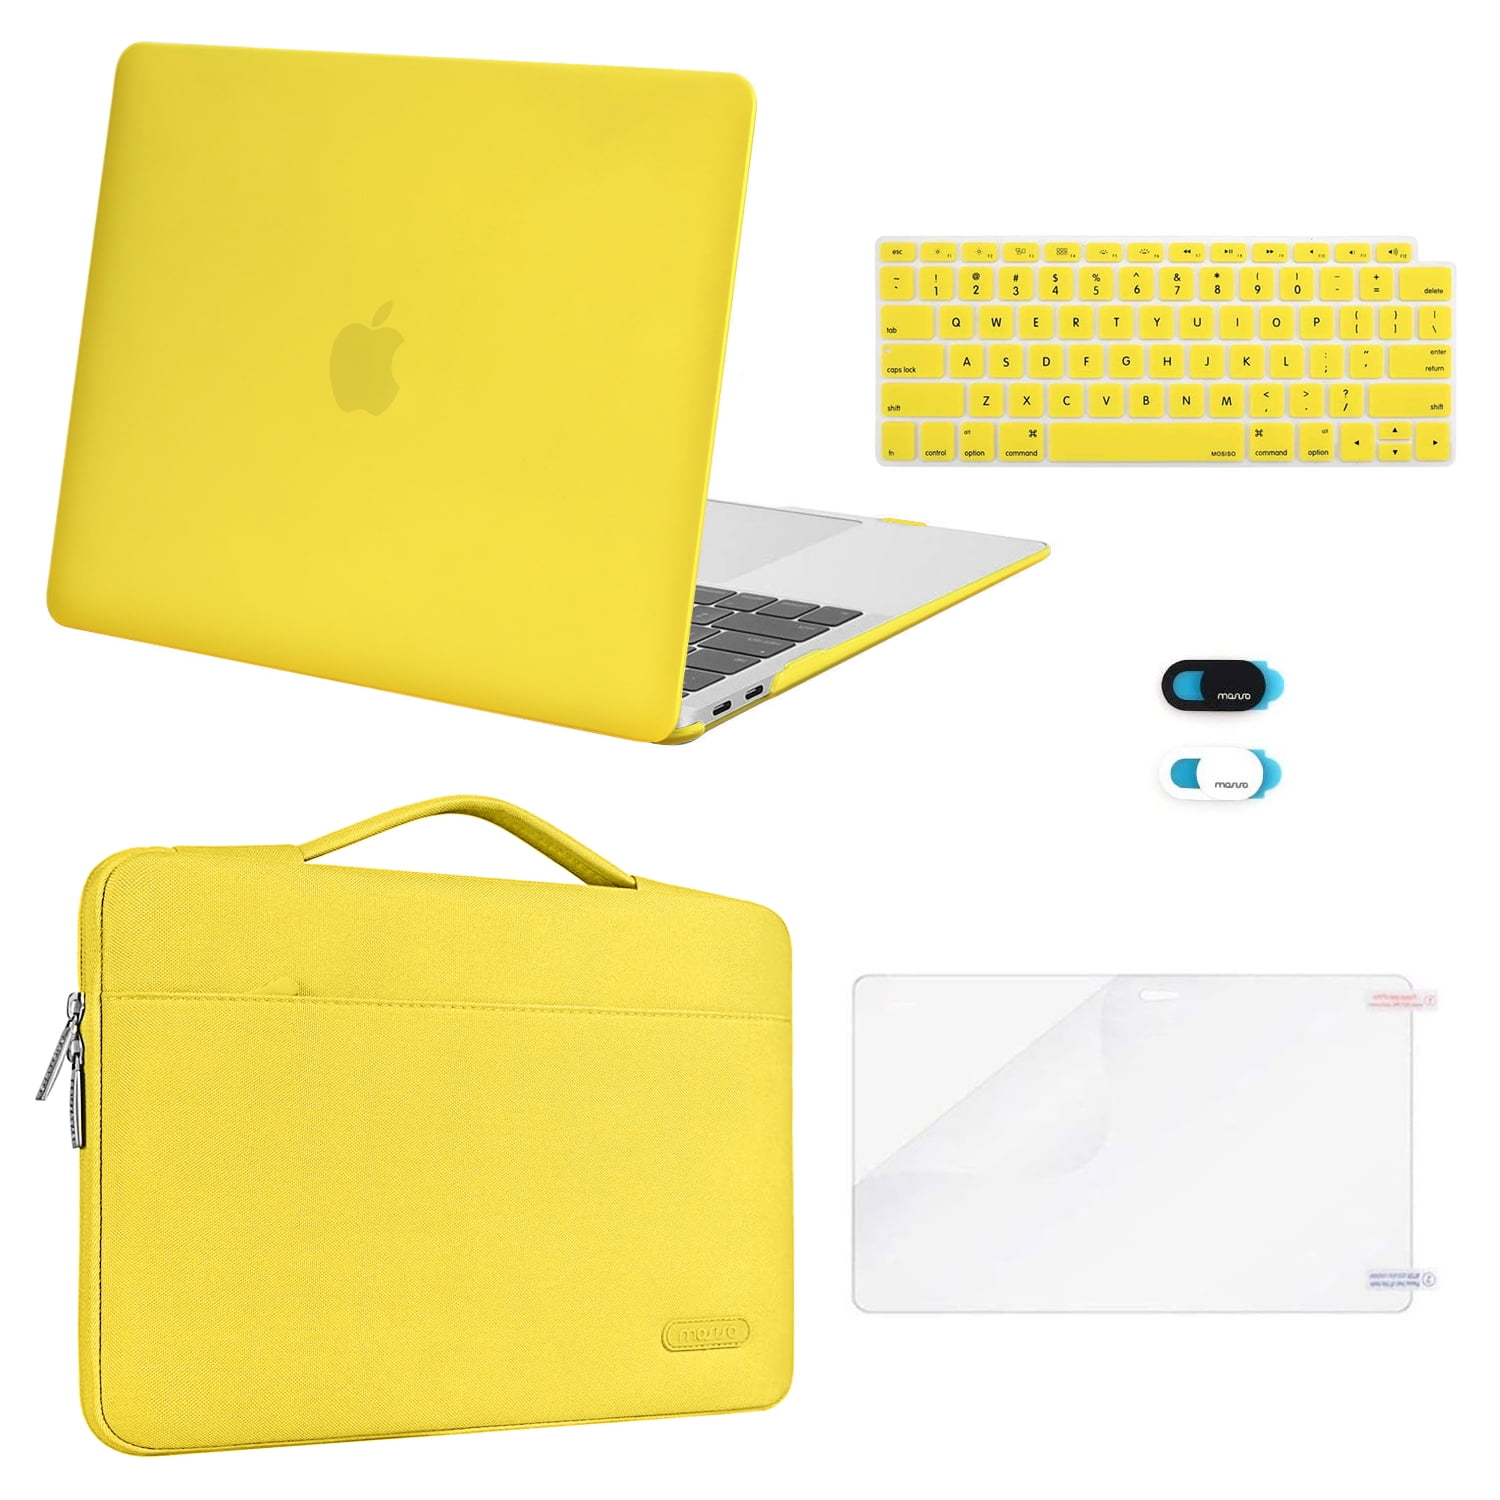 Macbook case 13 inch Macbook Pro case Macbook Air Macbook Pro 13 Macbook Air Macbook sleeve Laptop sleeve Macbook case